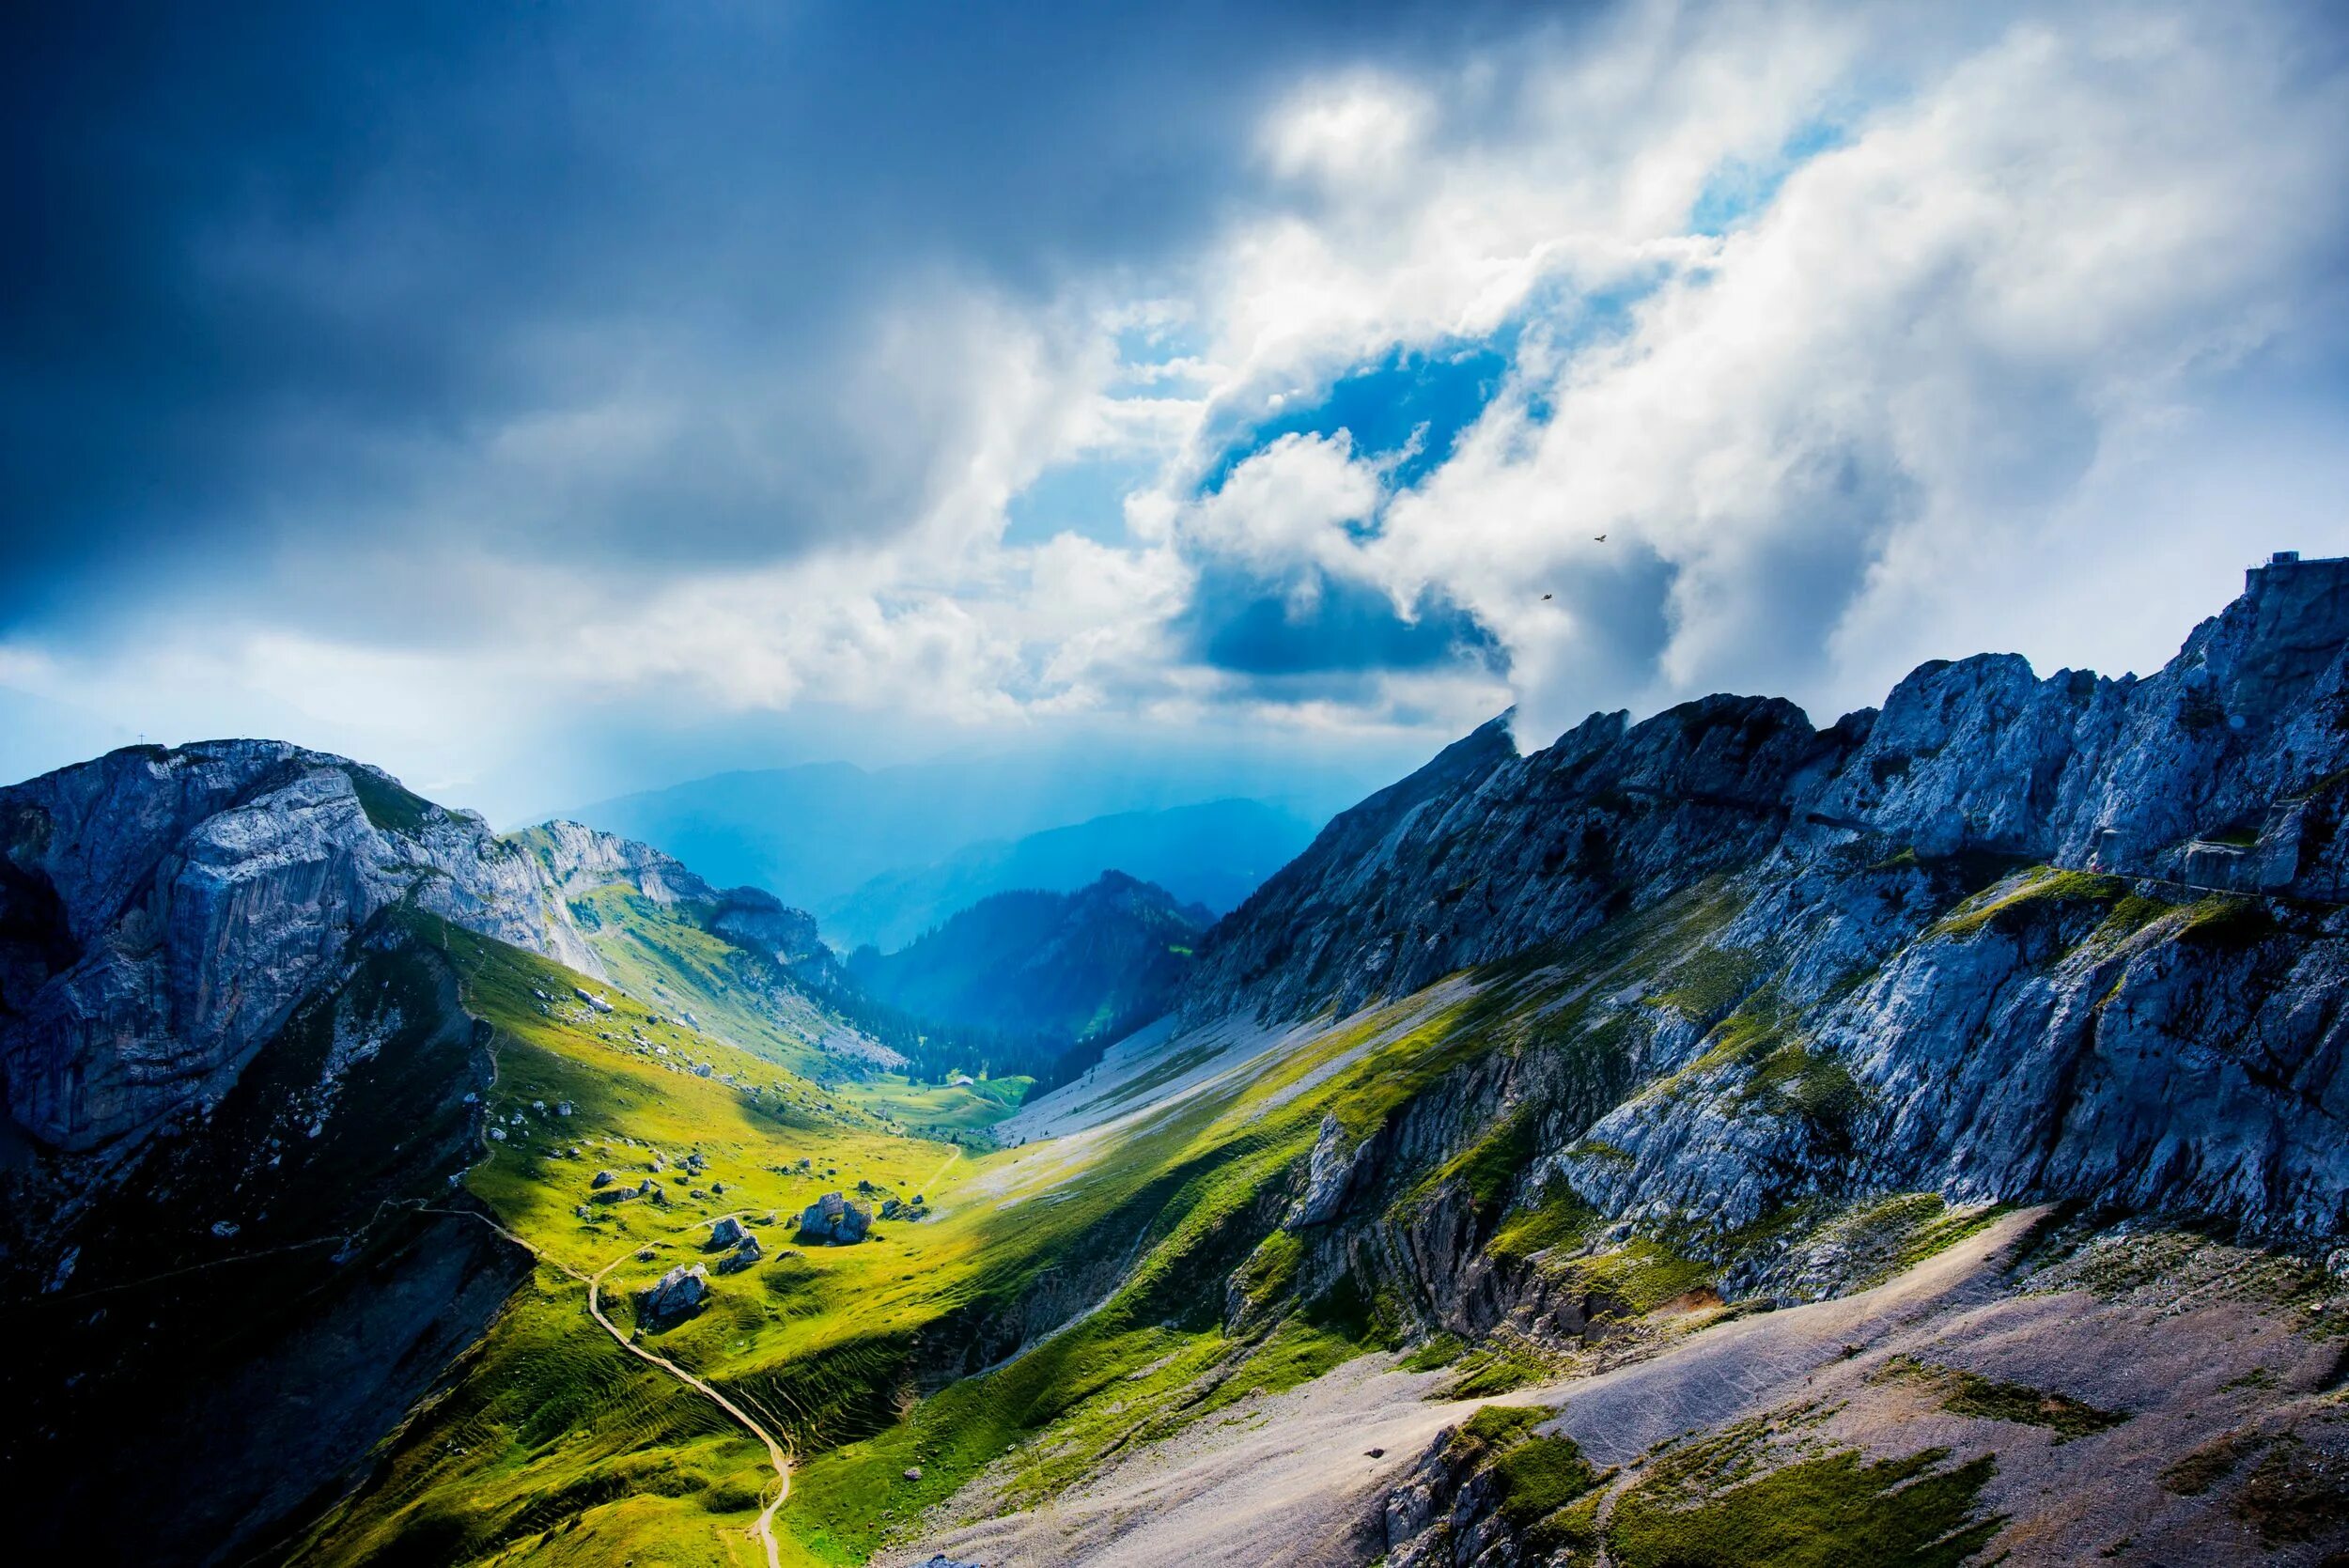 Обои на разрешение 1080 на 1080. Швейцария Альпы 3840 2160. Швейцария холмы. Горы Альпы Швейцария Долина скалы. Природа Швейцарии в 8к.